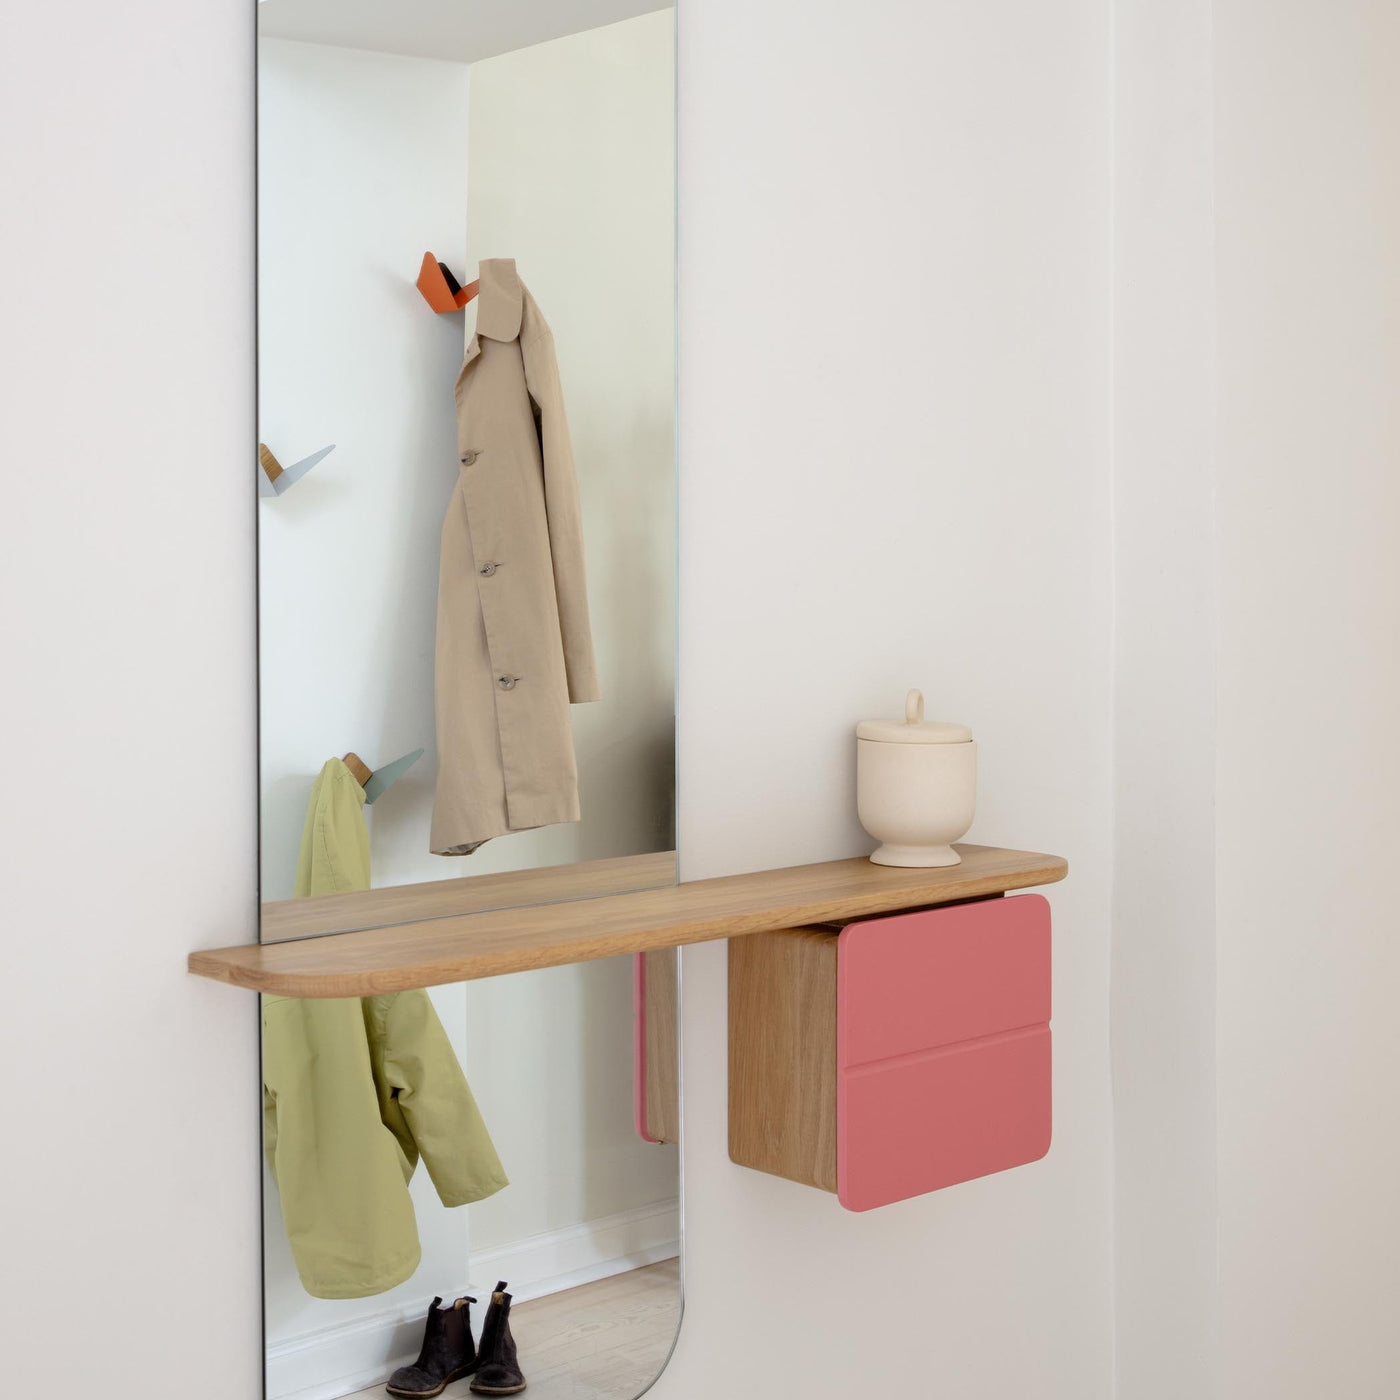 Optimisez votre espace avec le miroir One More Look d'Umage, conçu pour s'adapter aux petits espaces tout en offrant une praticité maximale.